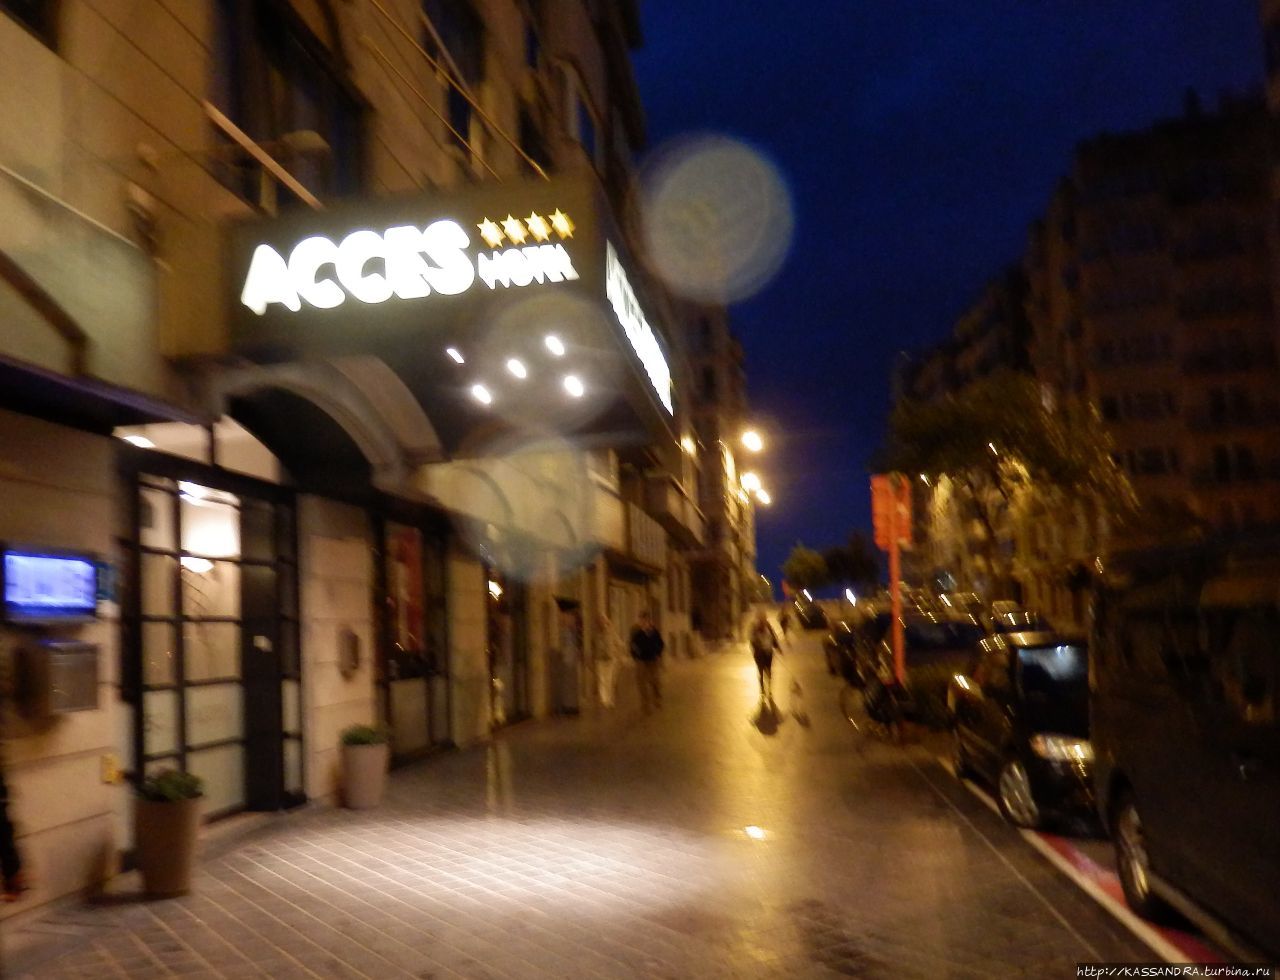 Acces отель Остенде, Бельгия